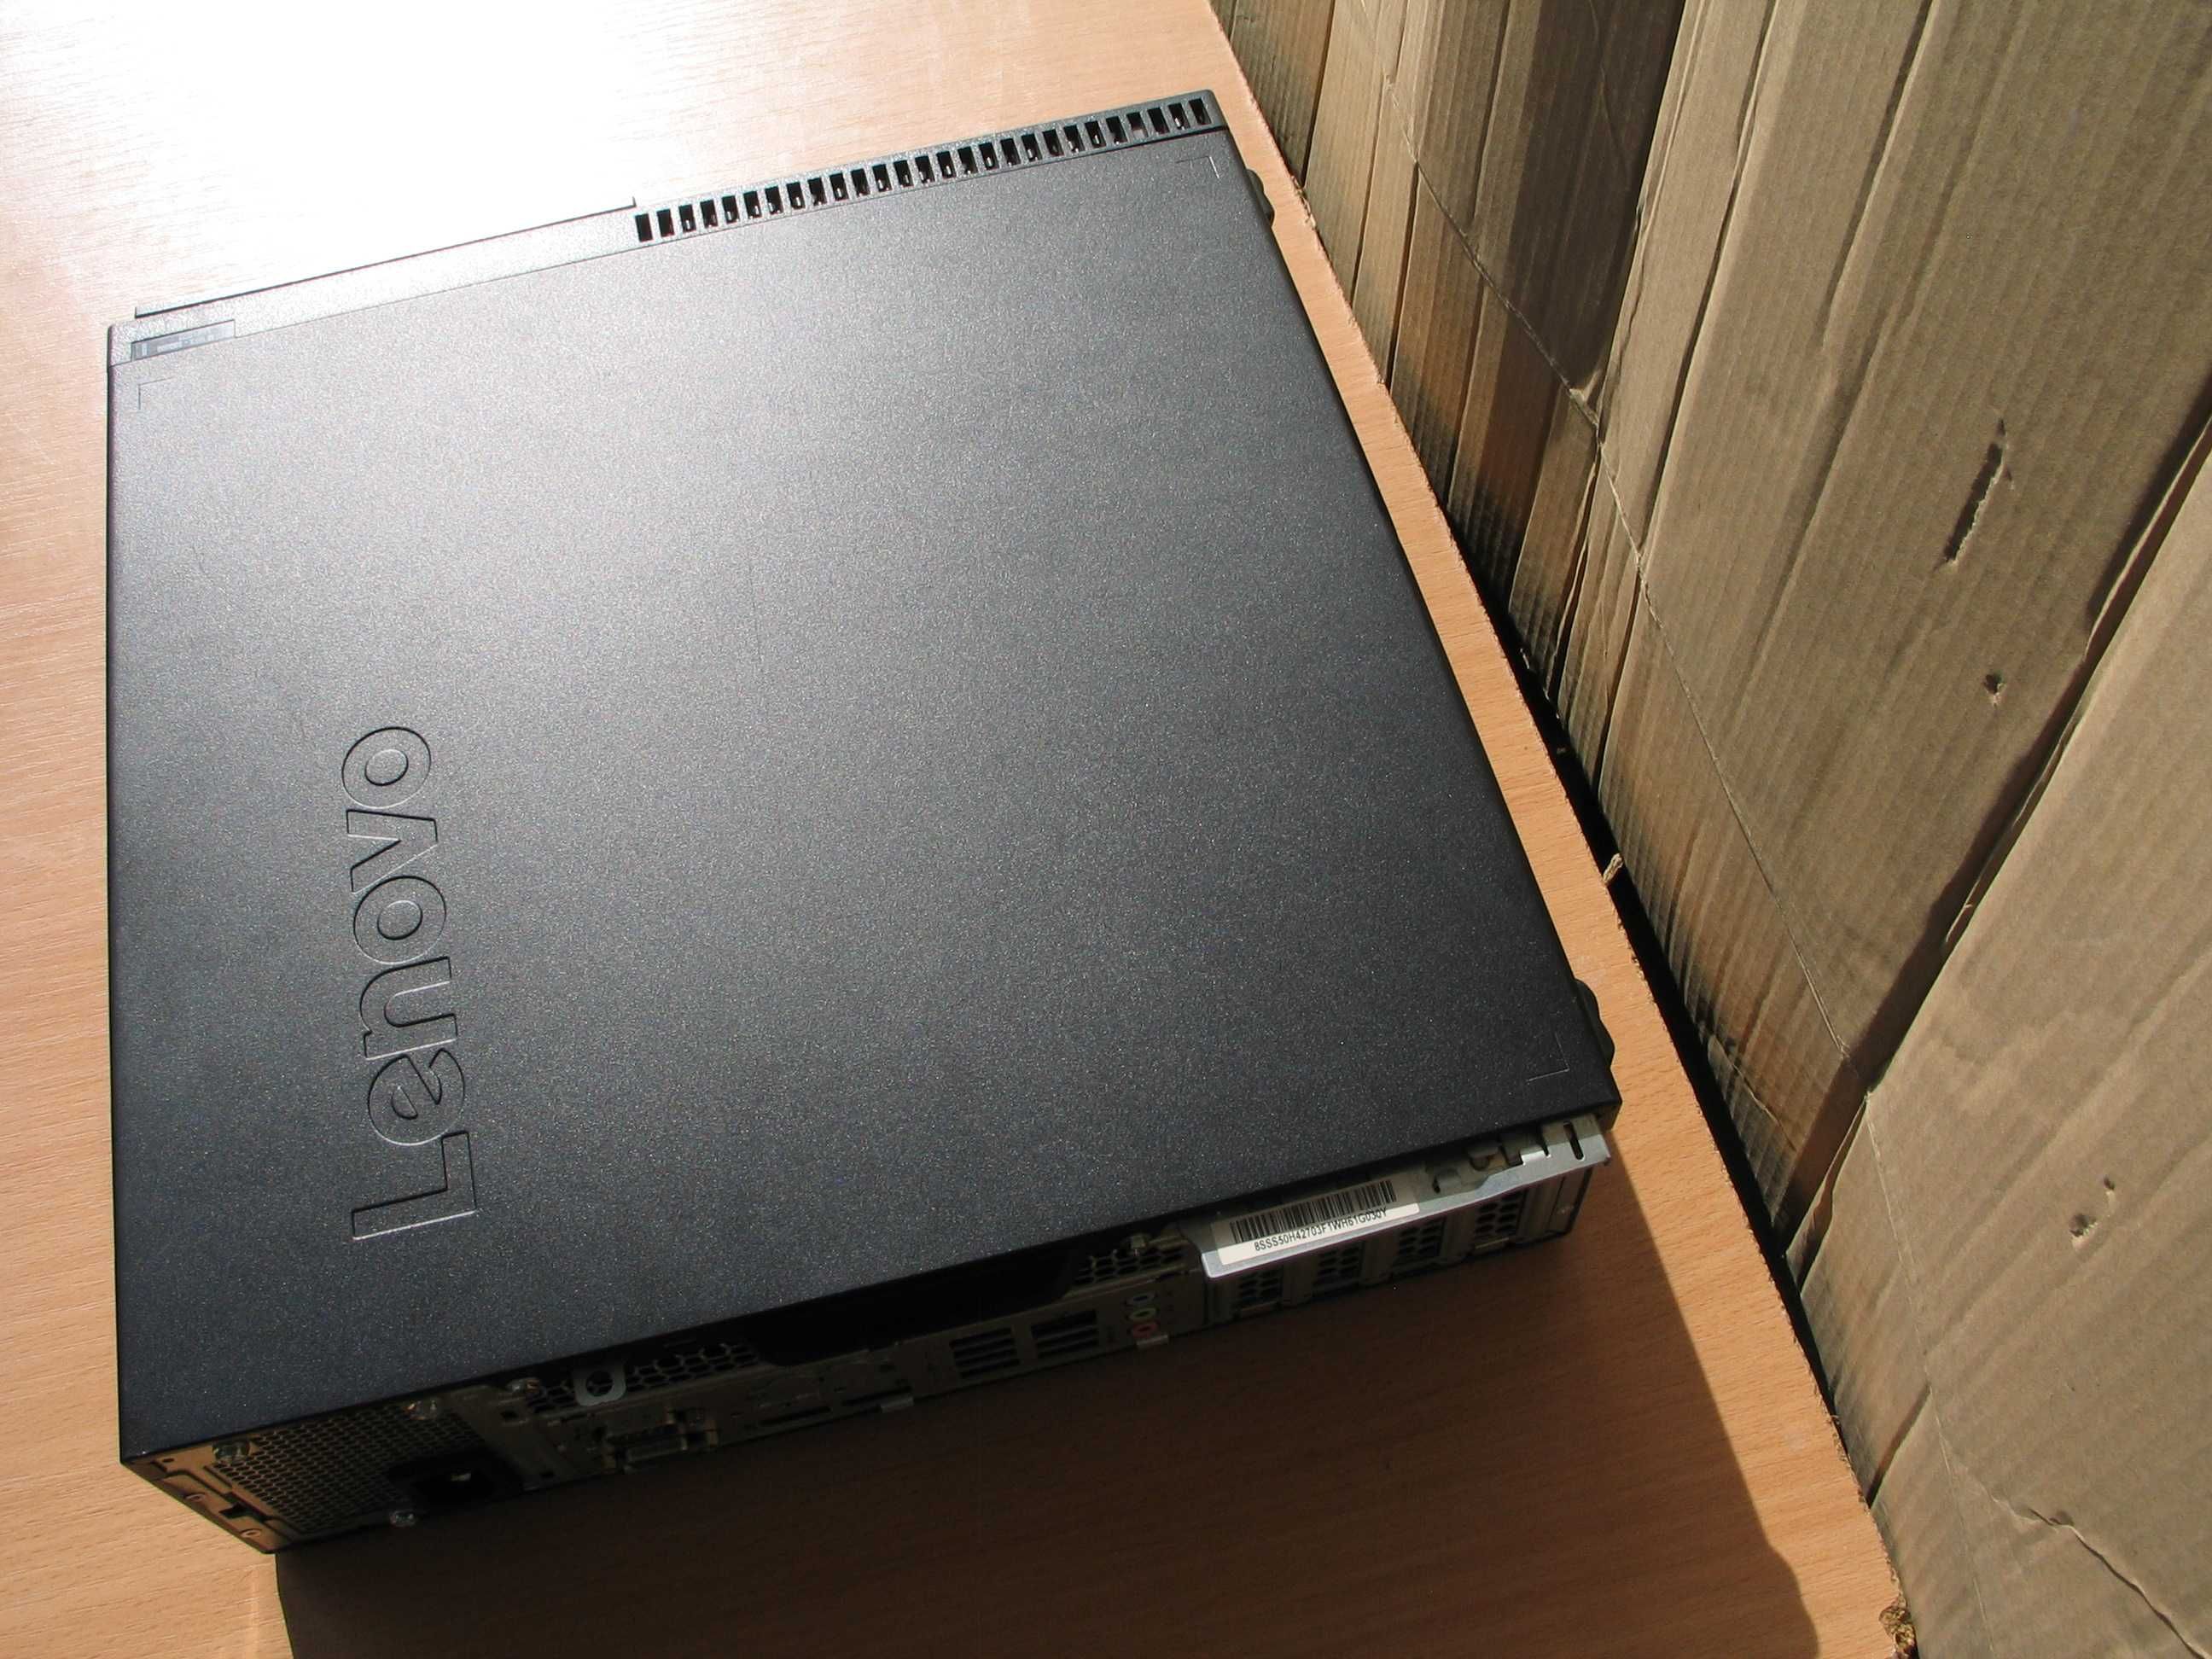 Pc Lenovo I7 6700